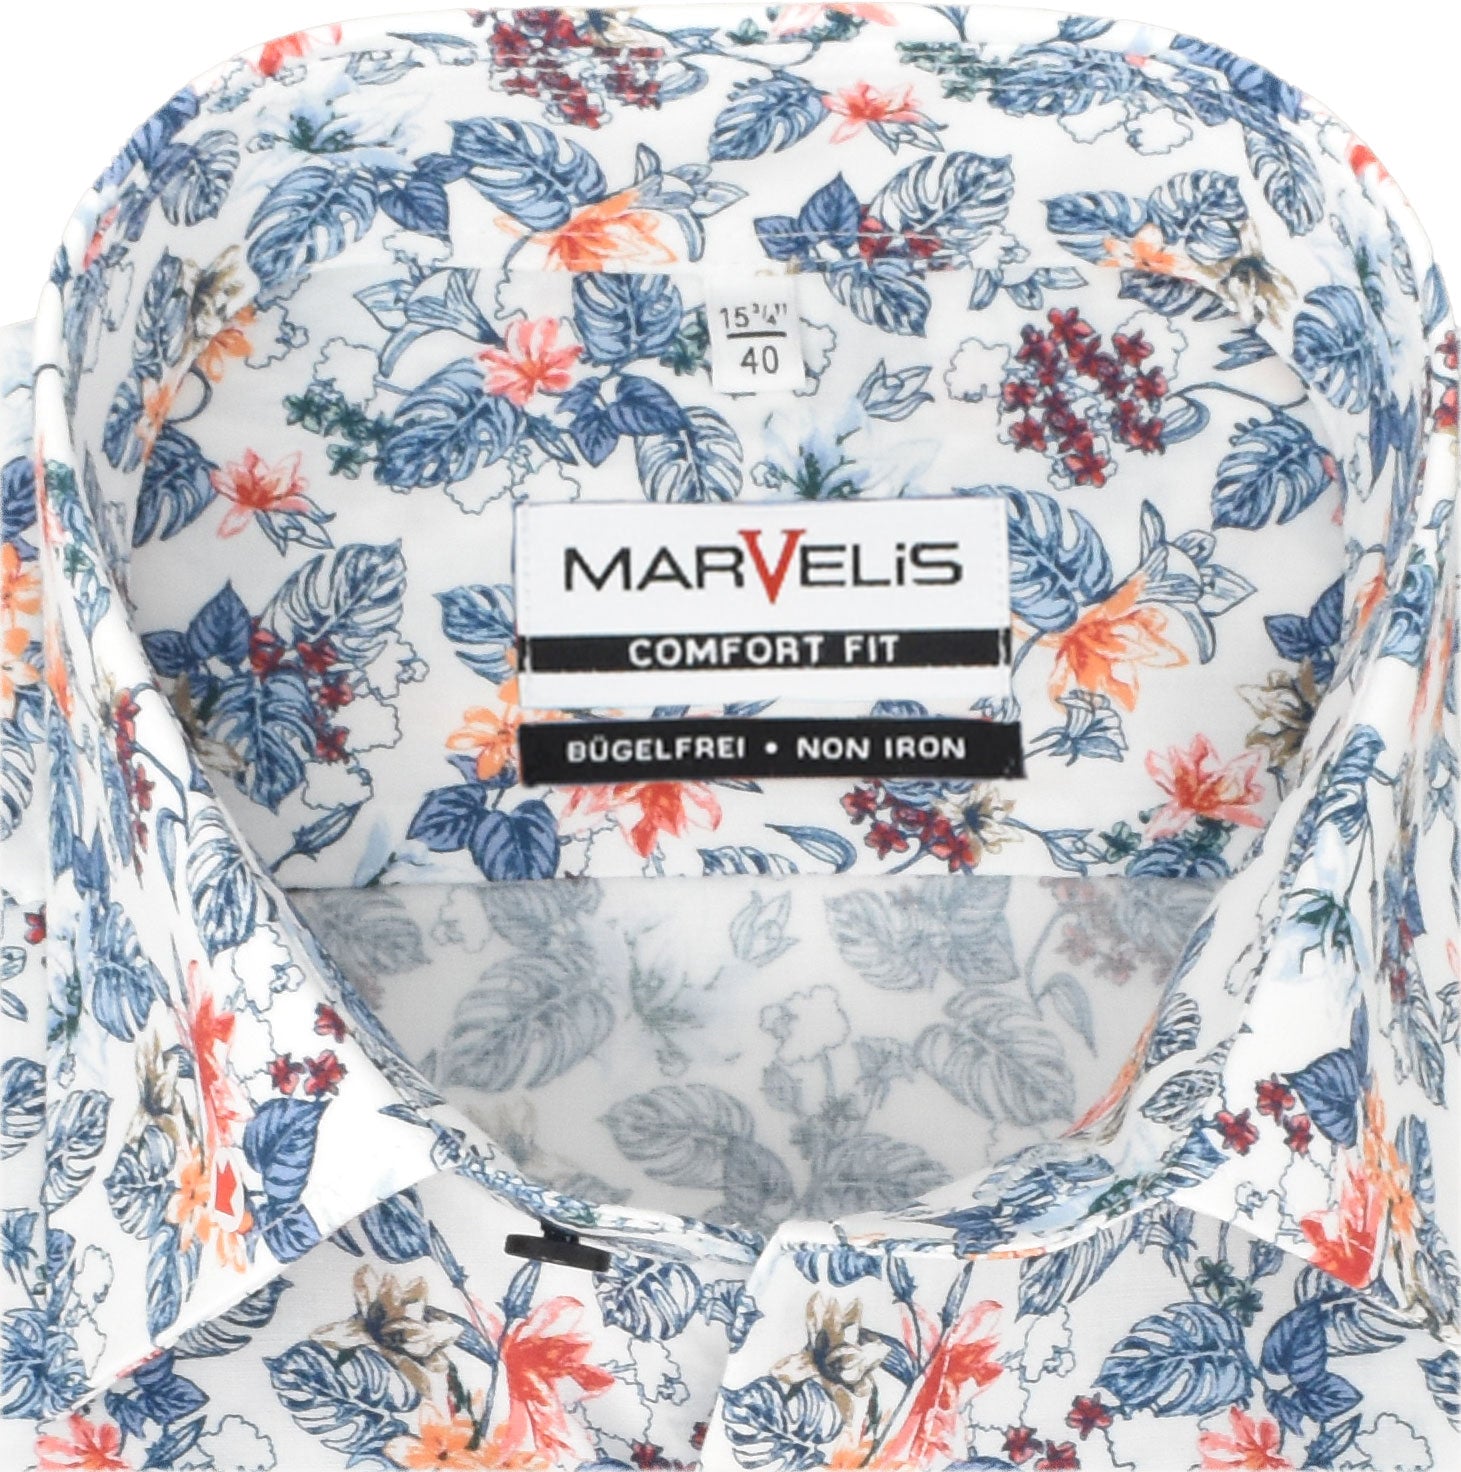 Marvelis Langarm-Hemd Kentkragen Florales Muster Weiß/Blau/Rot 100%  Baumwolle bügelfrei –